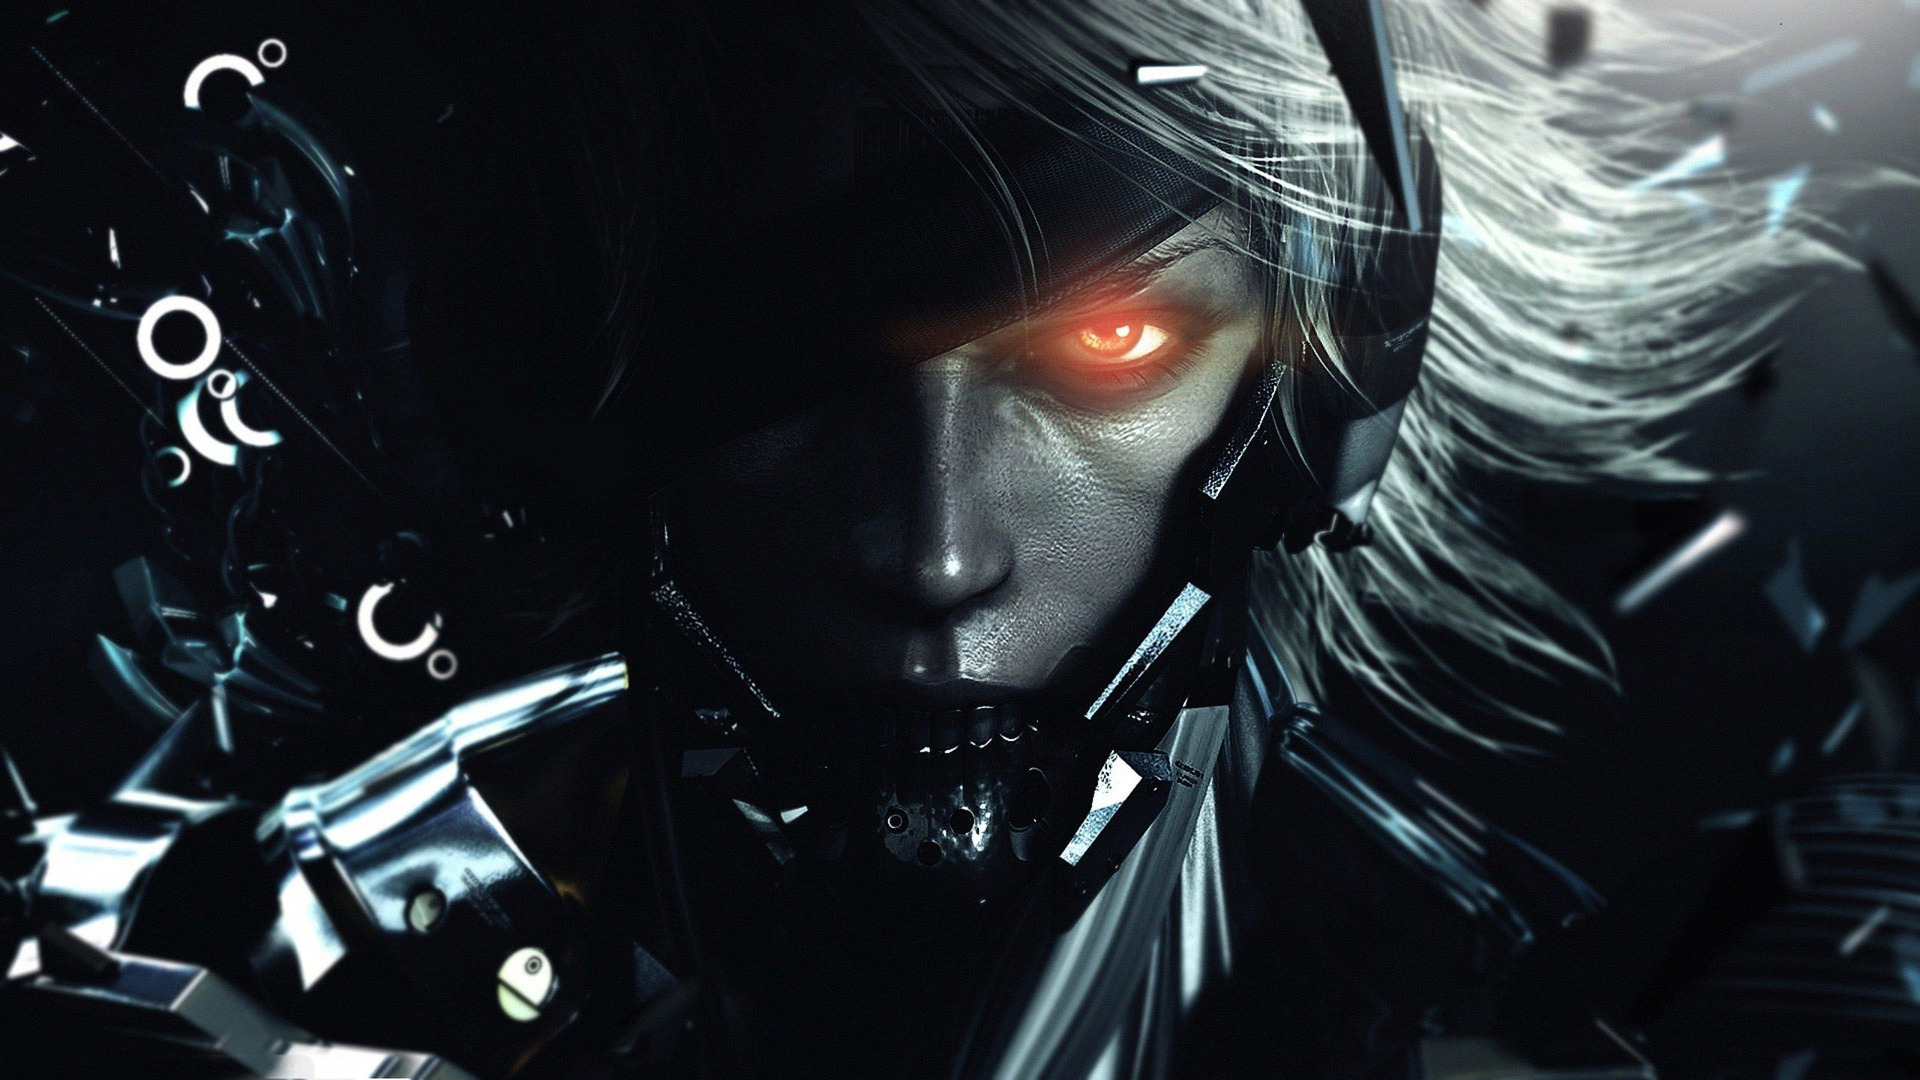 Free Download Raiden Metal Gear Rising Wallpaper By Pokethecactus On